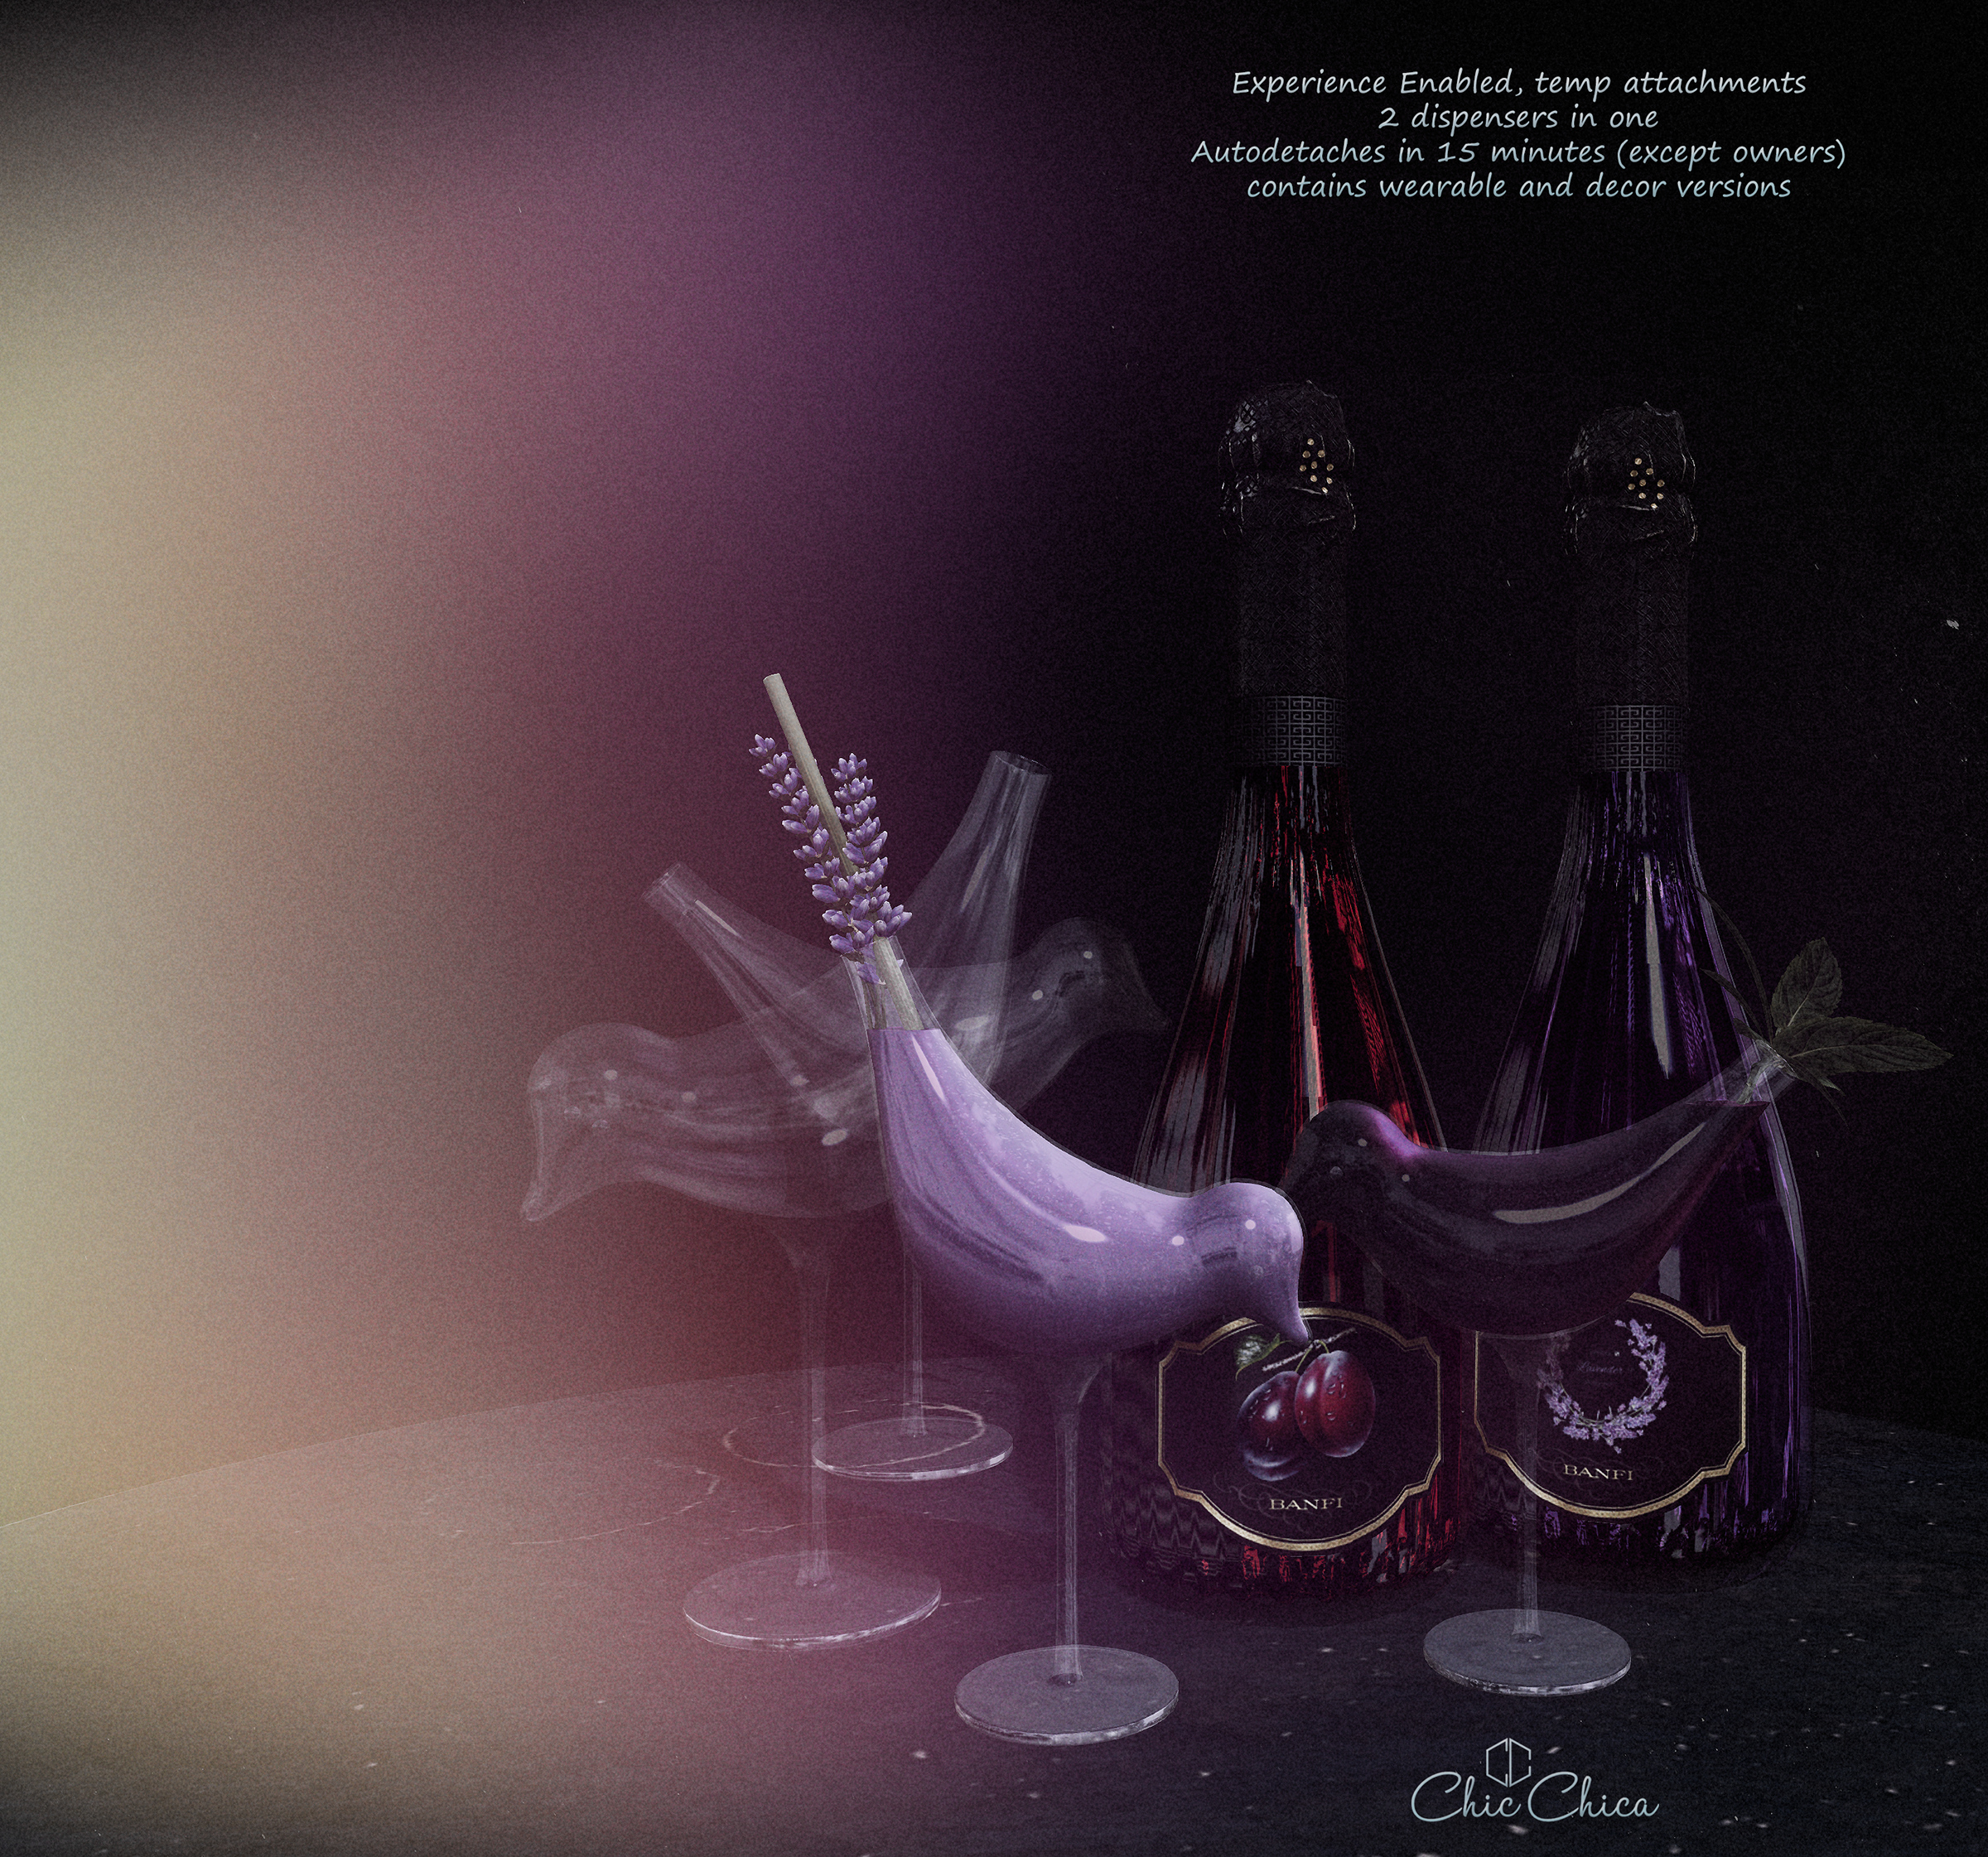 ChicChica – Lavender & Plum Wine Dispenser